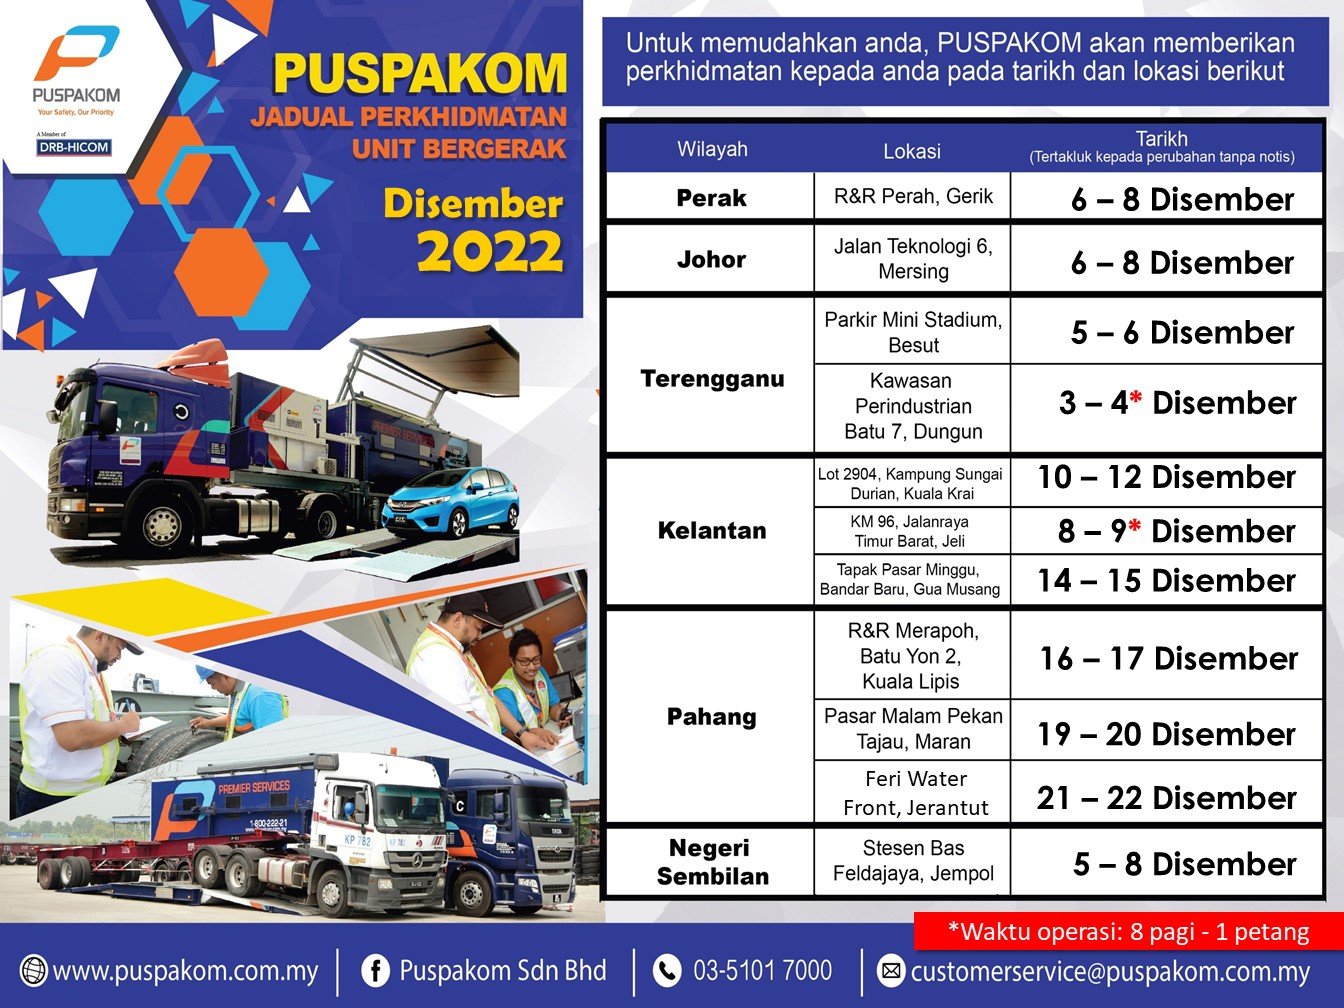 Puspakom-Dec-2022-Mobile-Unit-Schedule-1-BM